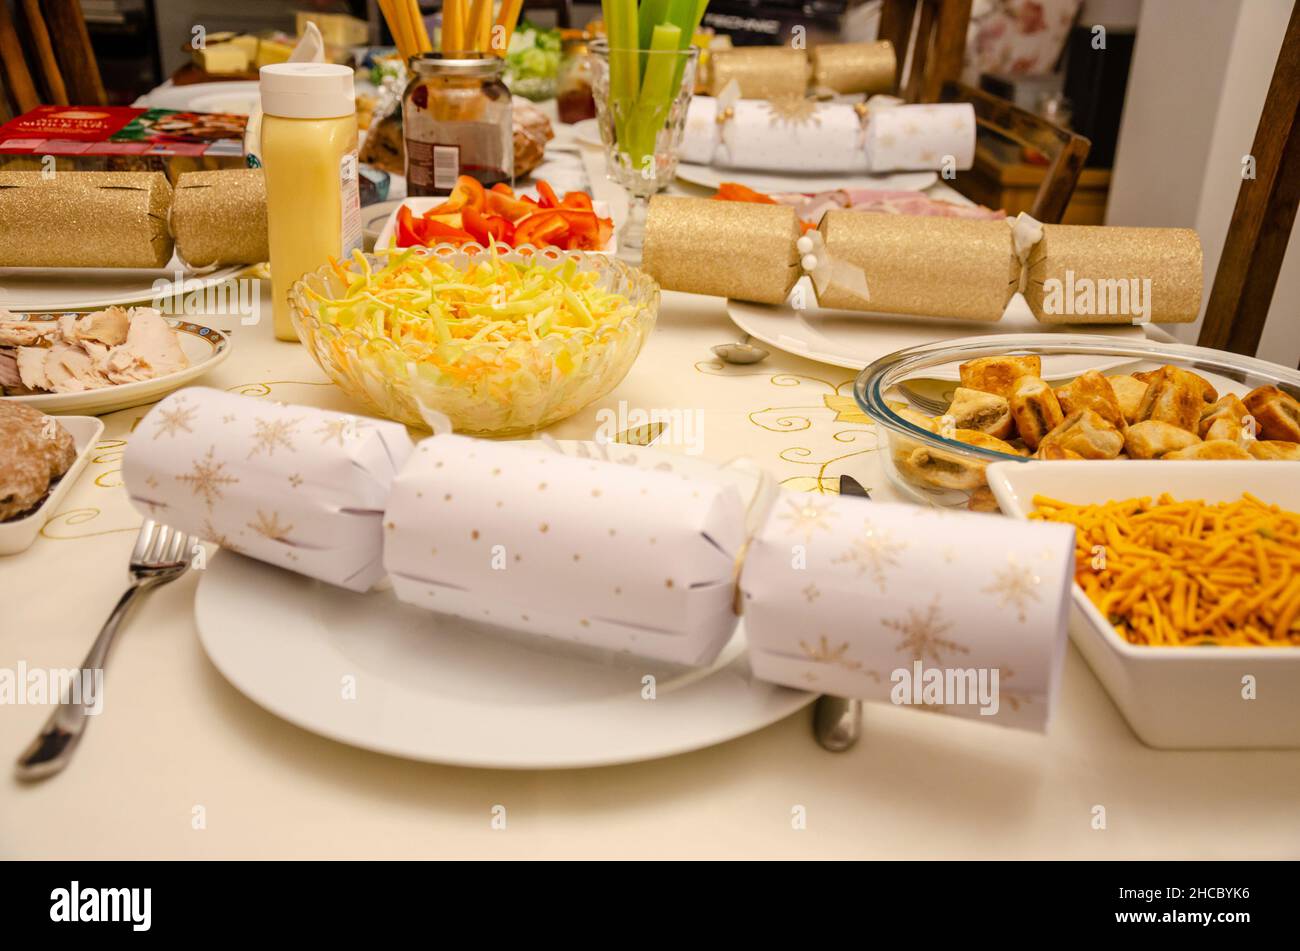 Eine Auswahl an Speisen auf einem Tisch, der für einen Salat zum Weihnachtstee mit festlichen Weihnachtskräckern ausgelegt ist. Stockfoto